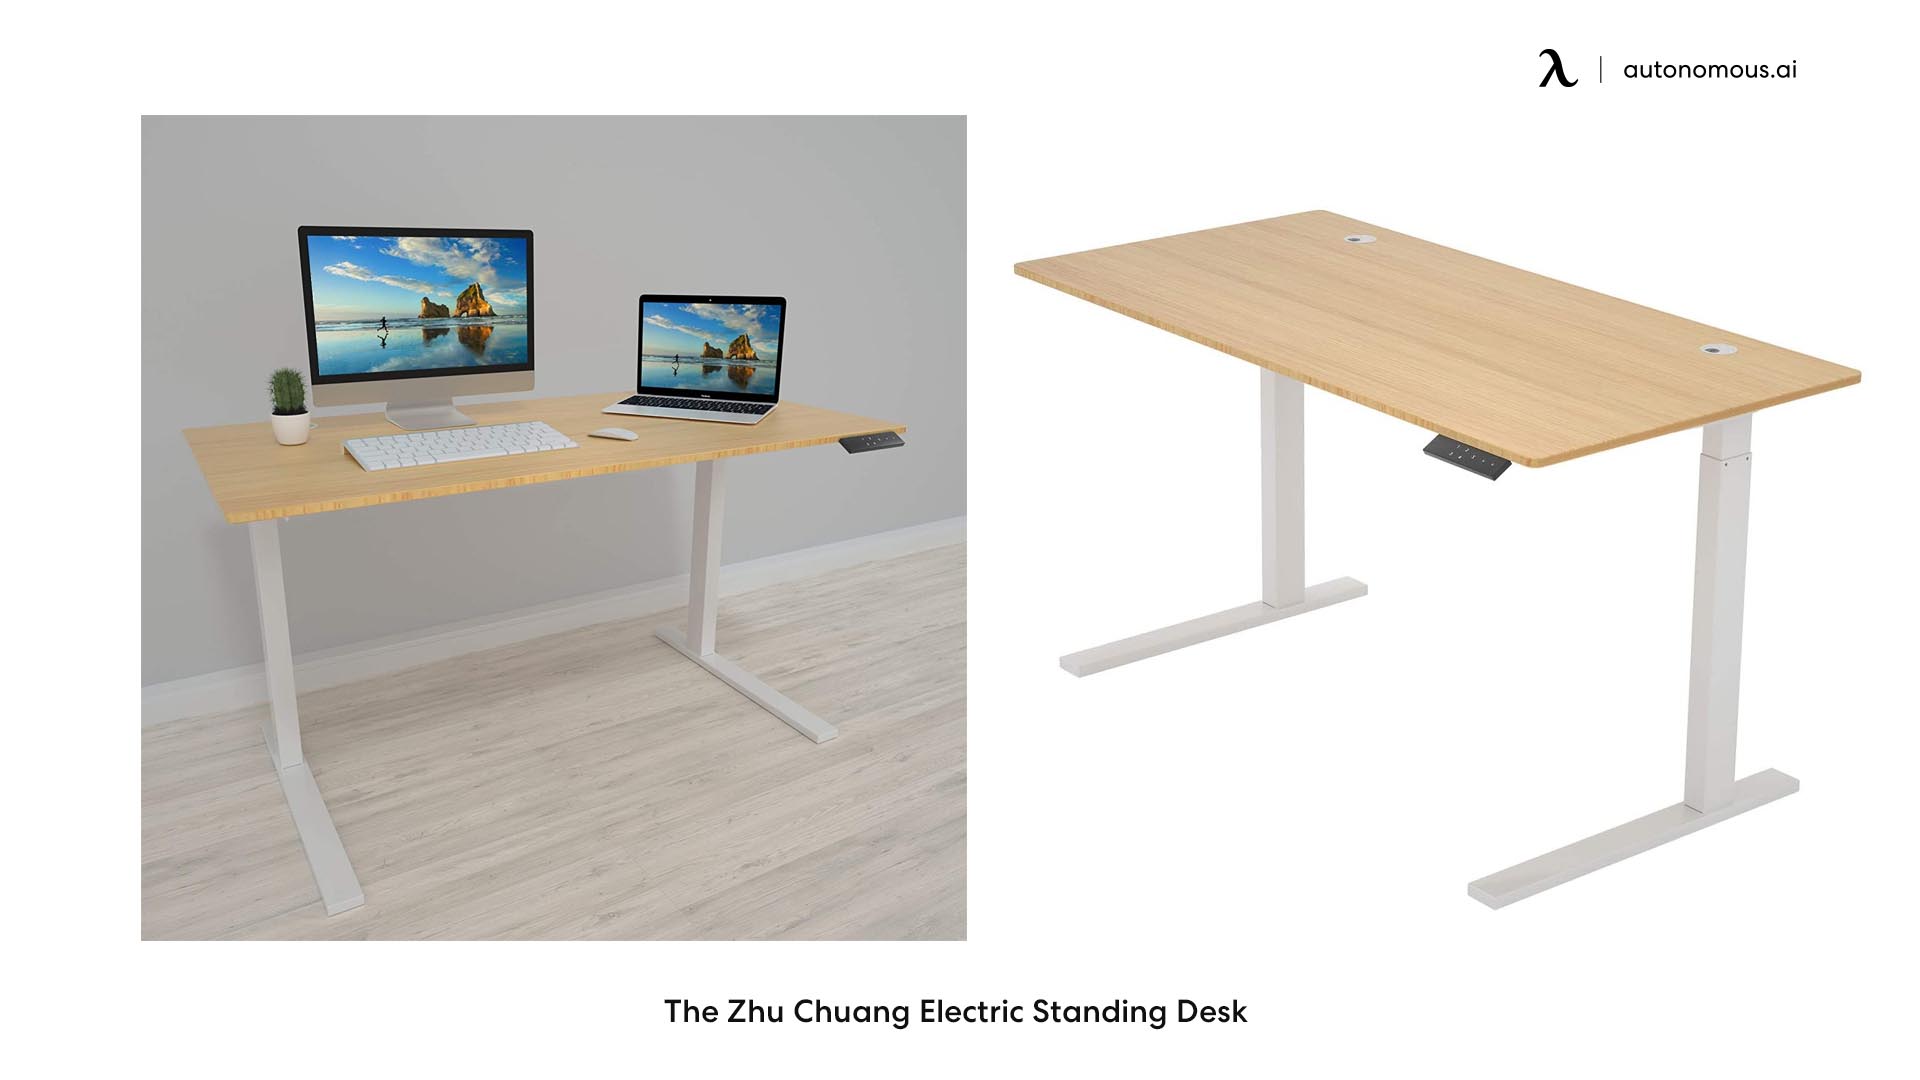 The Zhu Chuang Electric Standing Desk